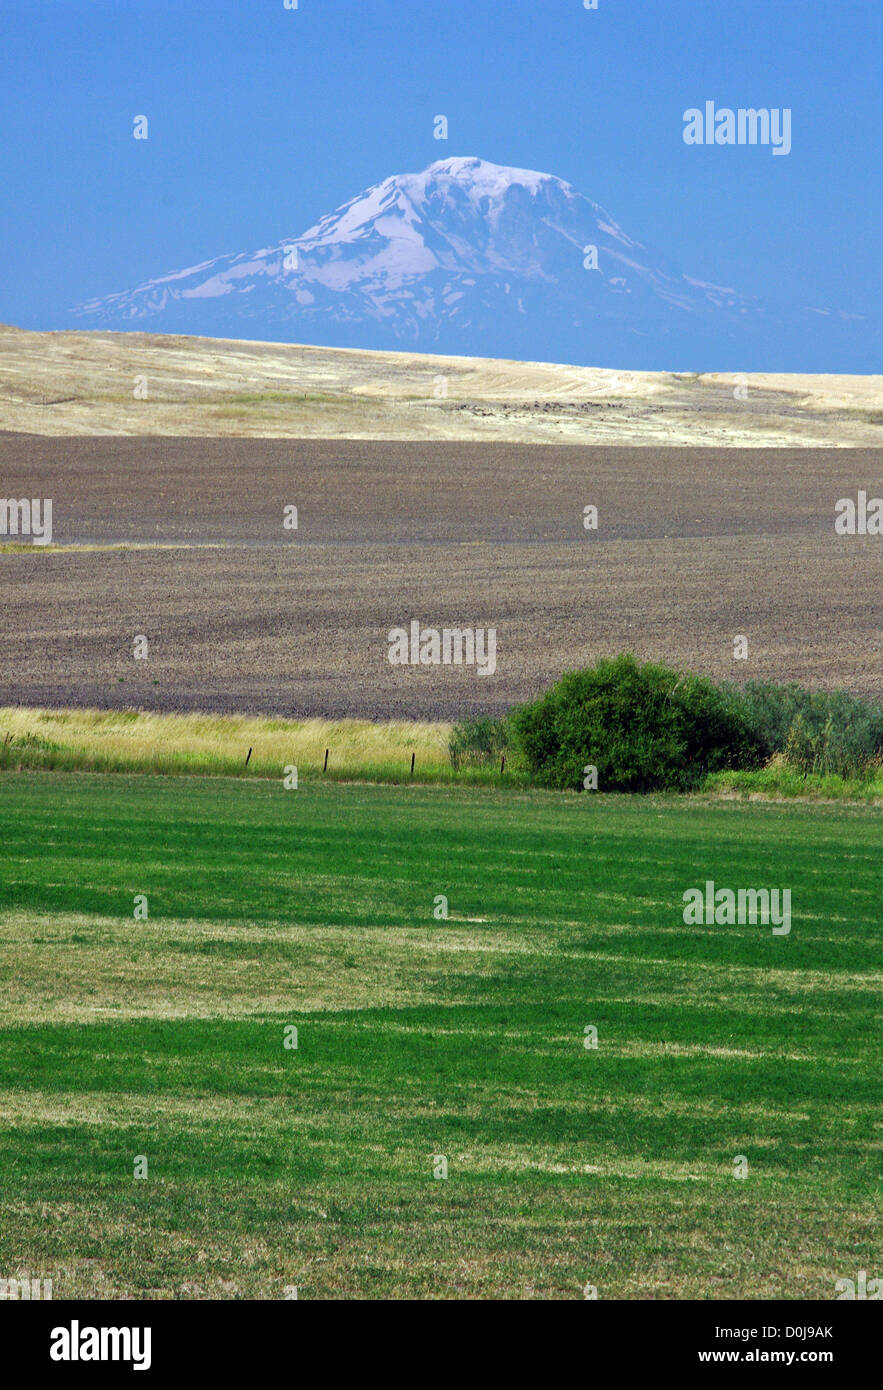 Stato di Washington Mt. Rainier come osservata attraverso la foschia atmosferica al di sopra di una agricoltura rurale sulle colline del paesaggio. Foto Stock